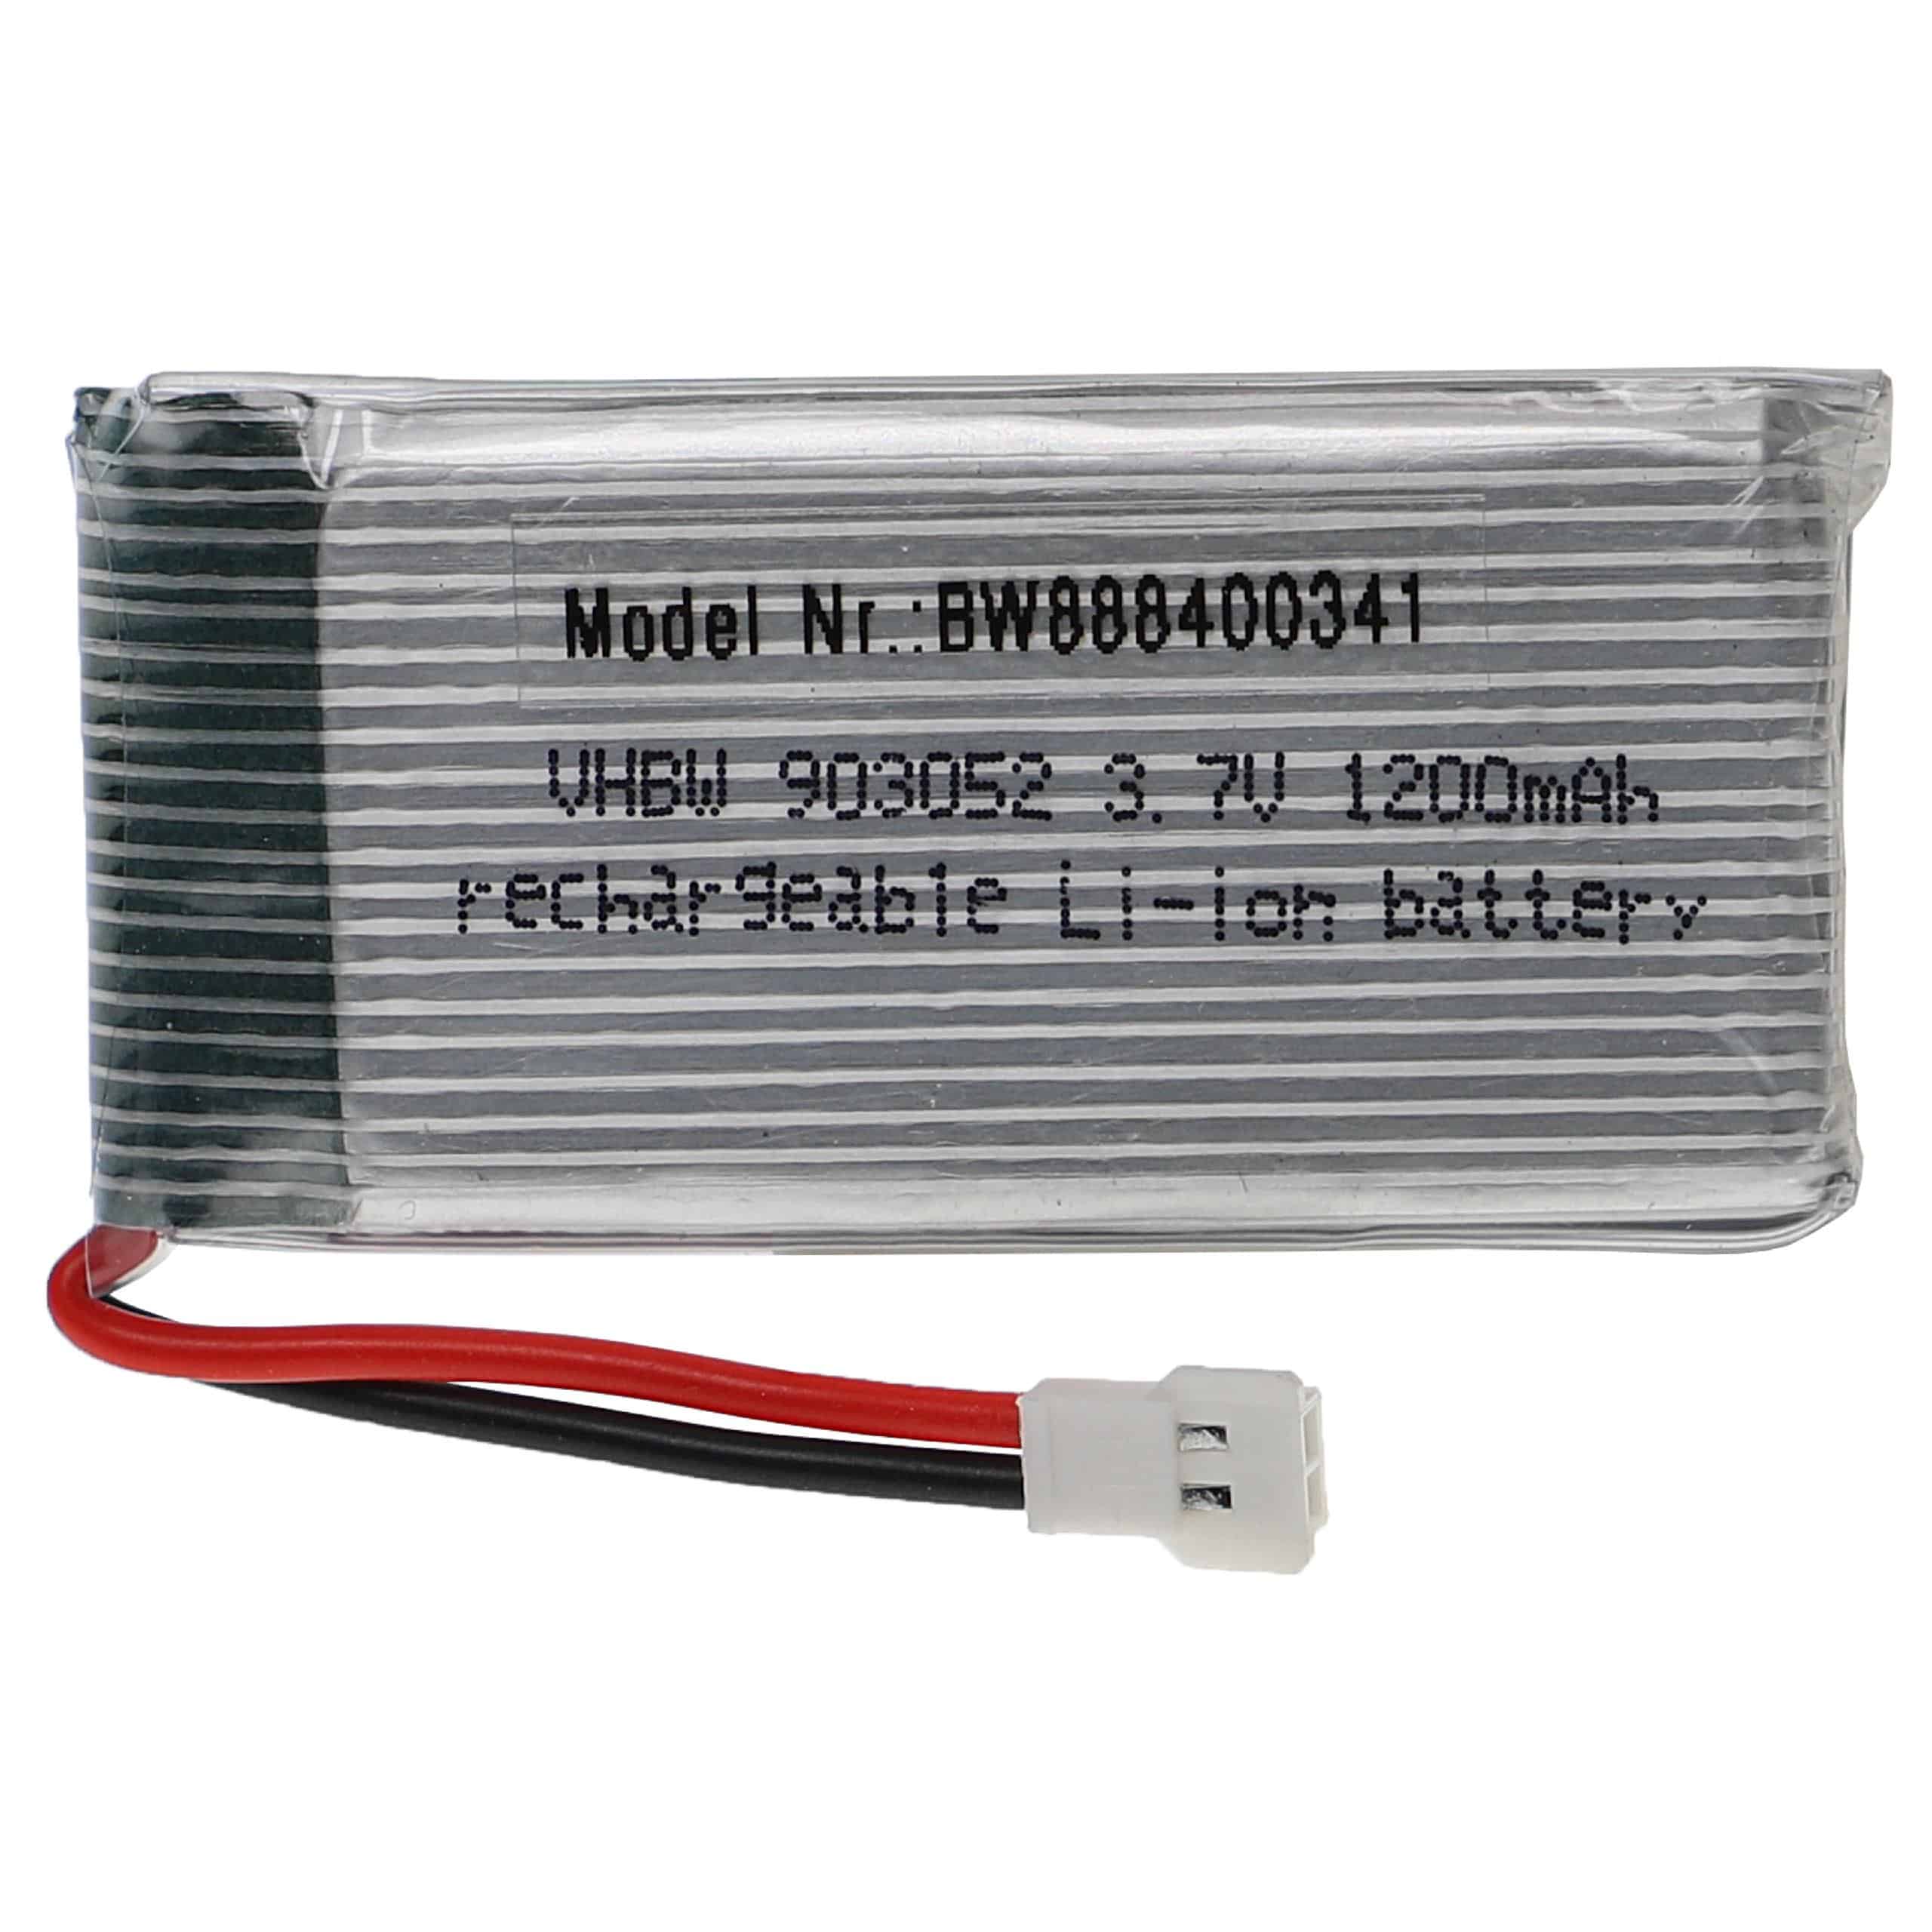 Batterie pour modèle radio-télécommandé - 1200mAh 3,7V Li-polymère, XH 2.54 2P